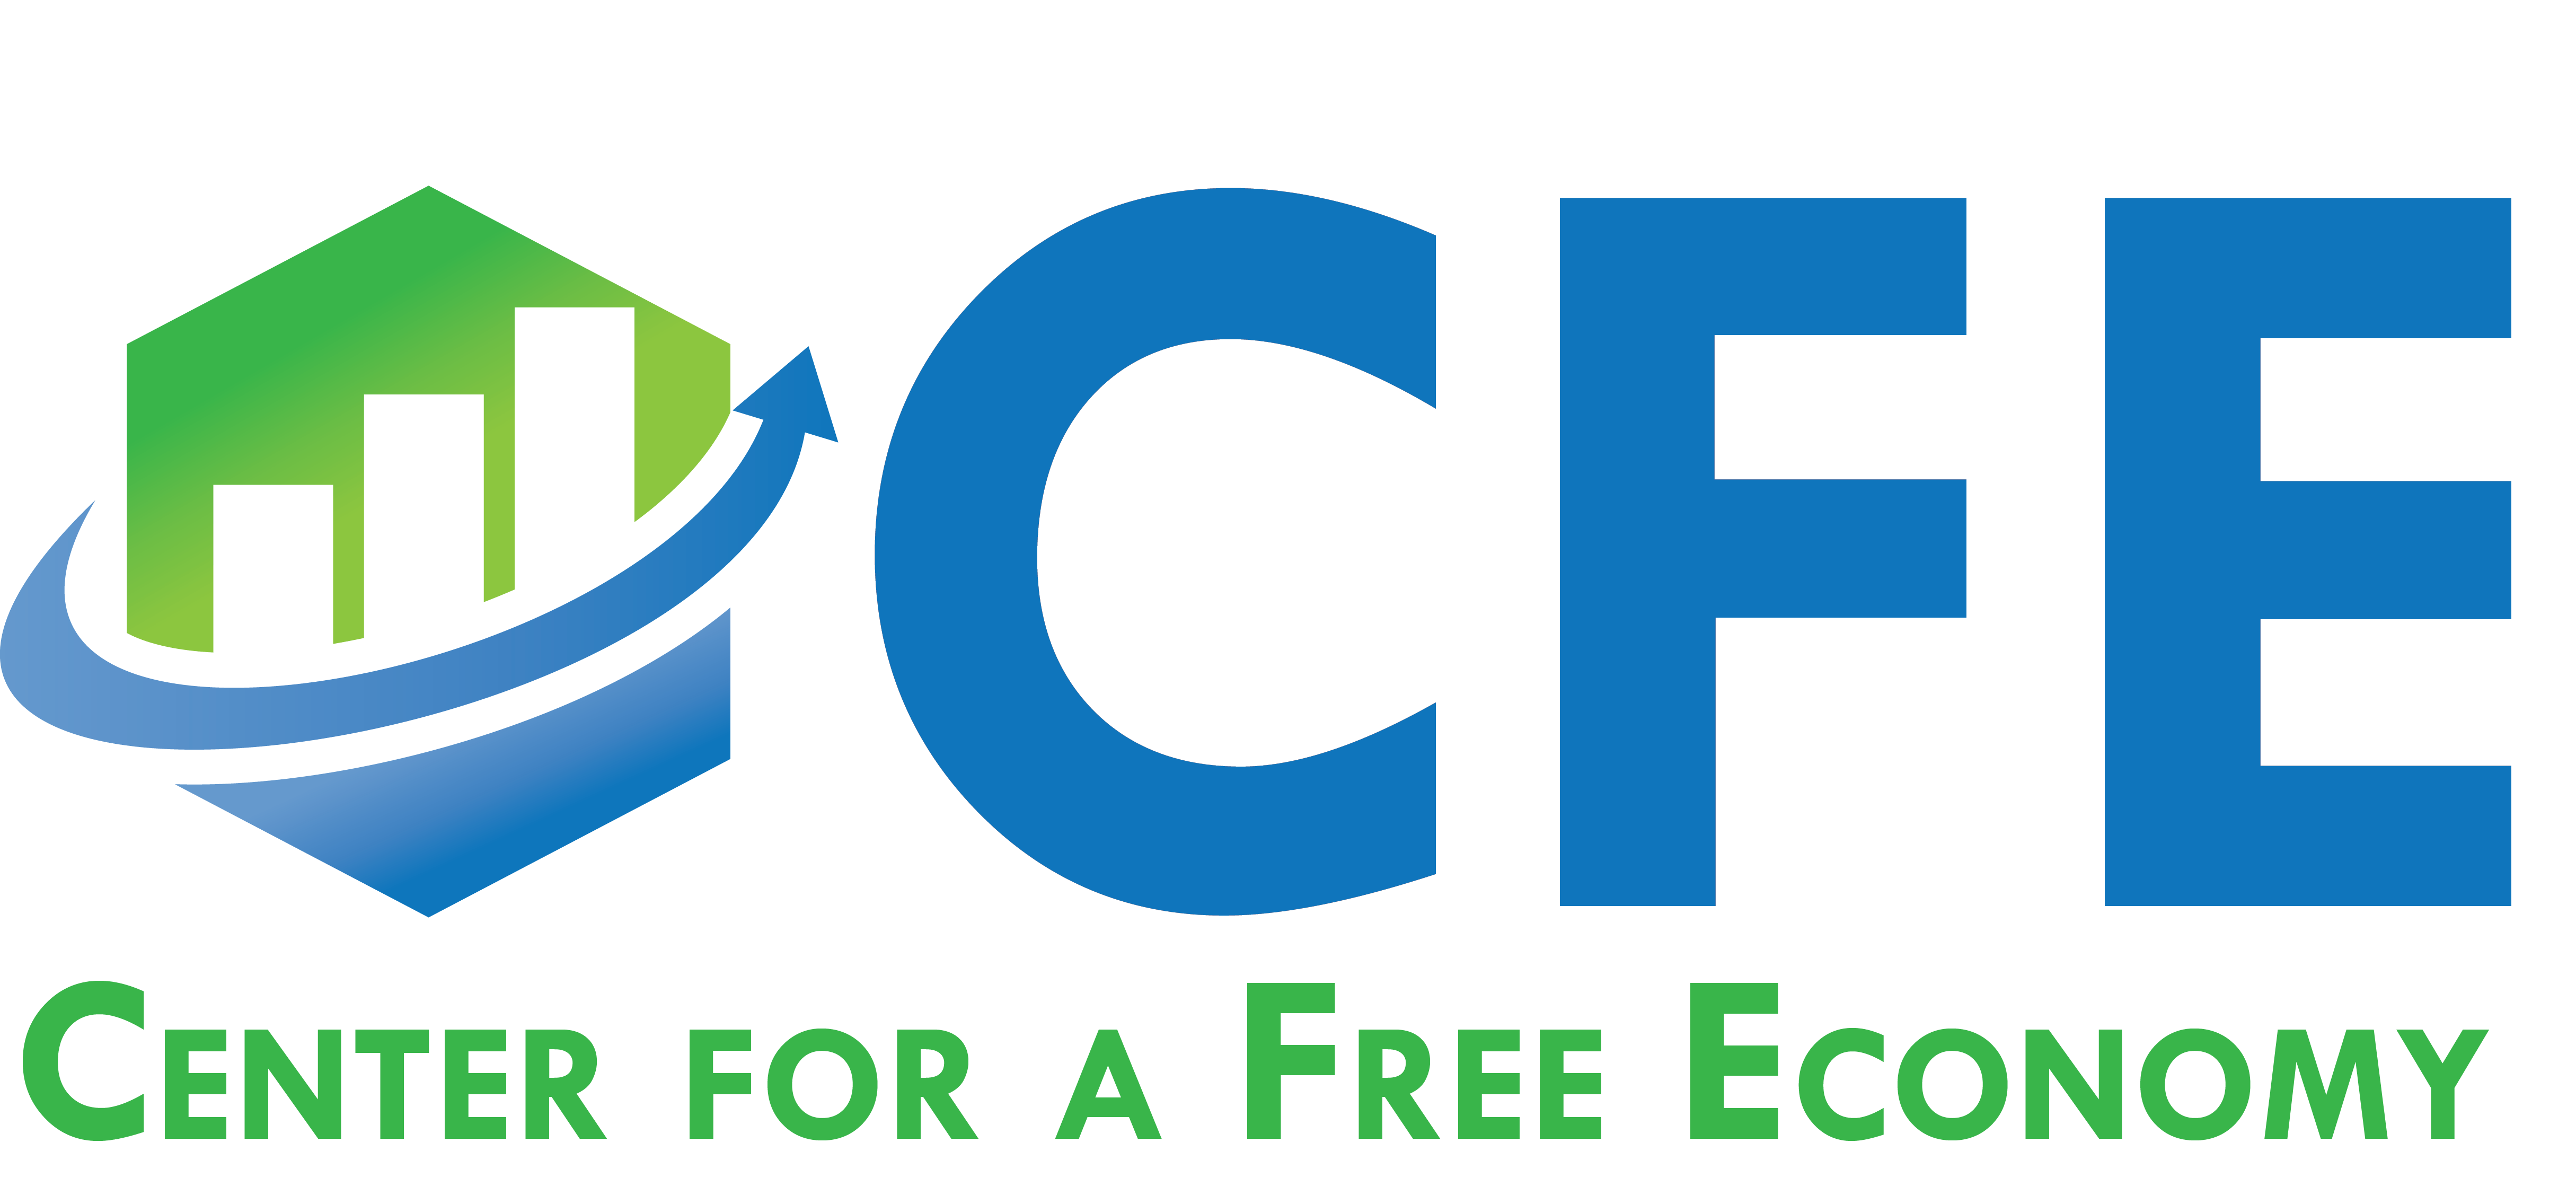 Economy Logo - Center for a Free Economy